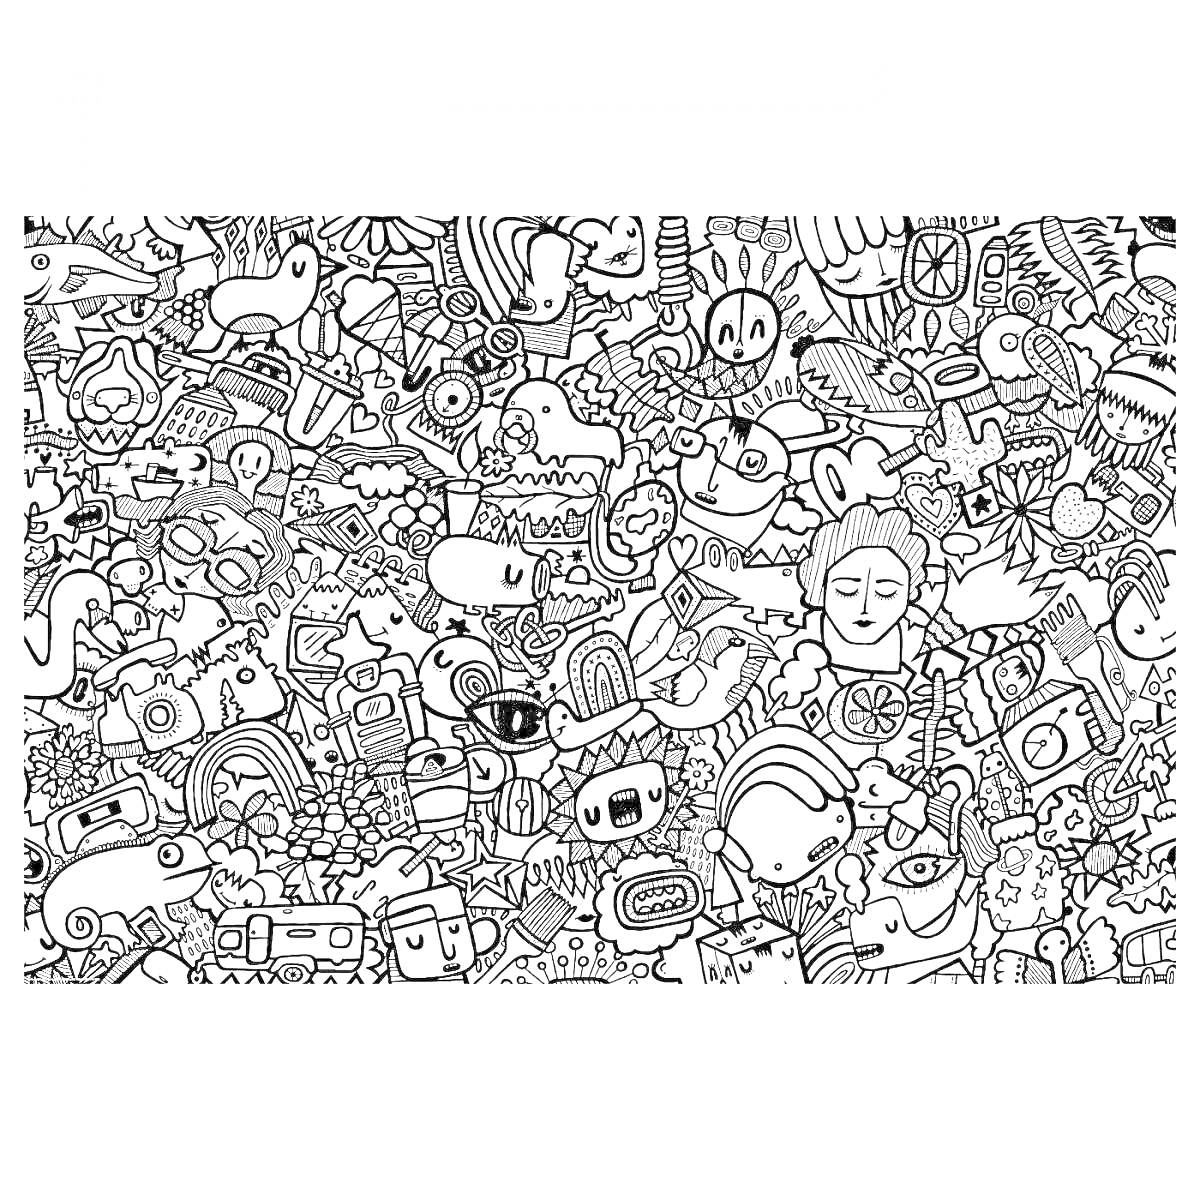 Раскраска Раскраска Икеа с разнообразными элементами, такими как животные, еда, растения, персонажи